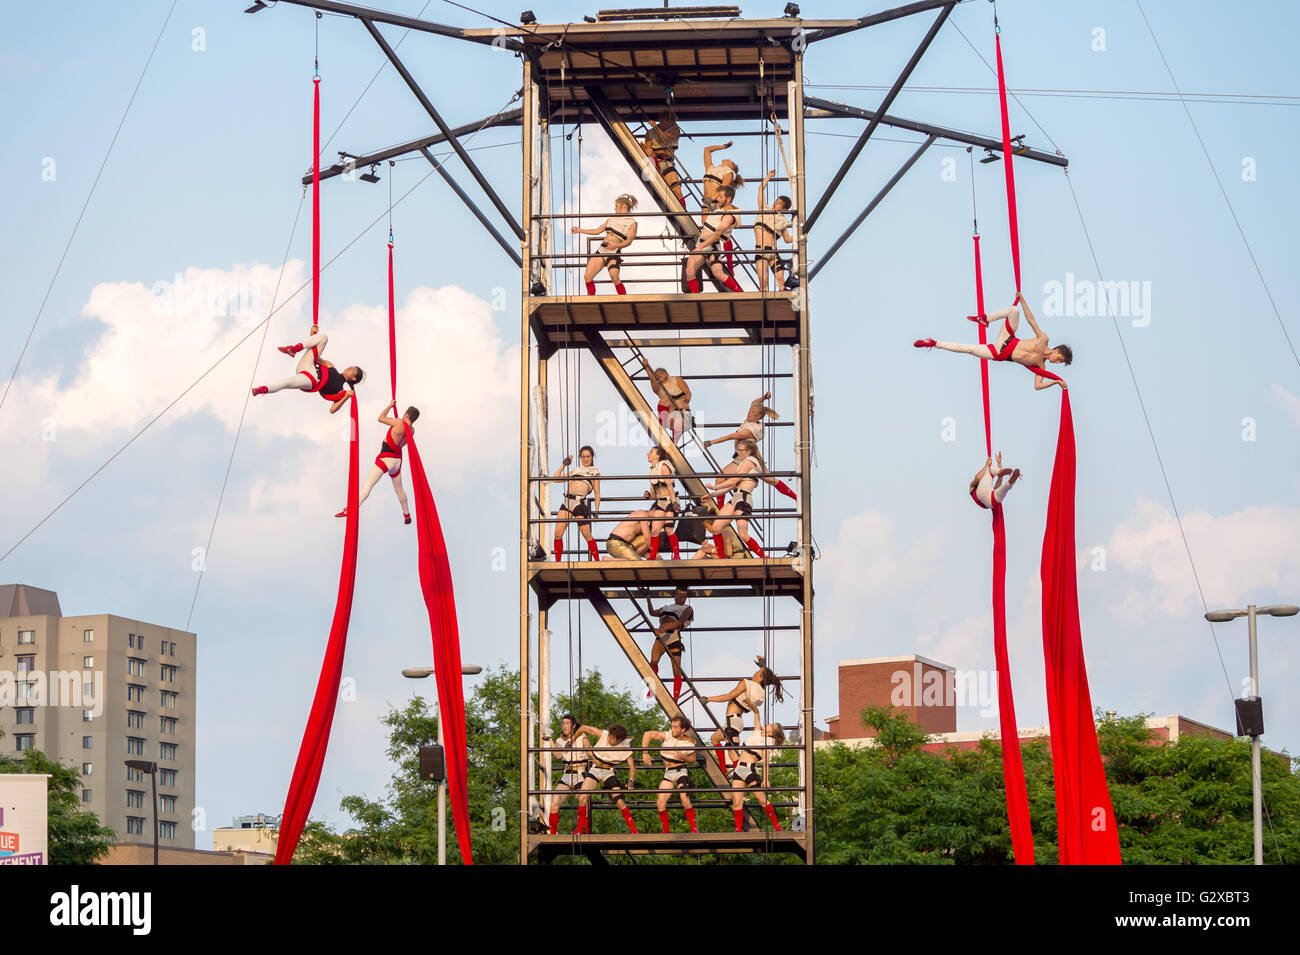 Montréal Complètement Cirque Festival Show "Duelle" im Ort Émilie-Gamelin (2015) Stockfoto